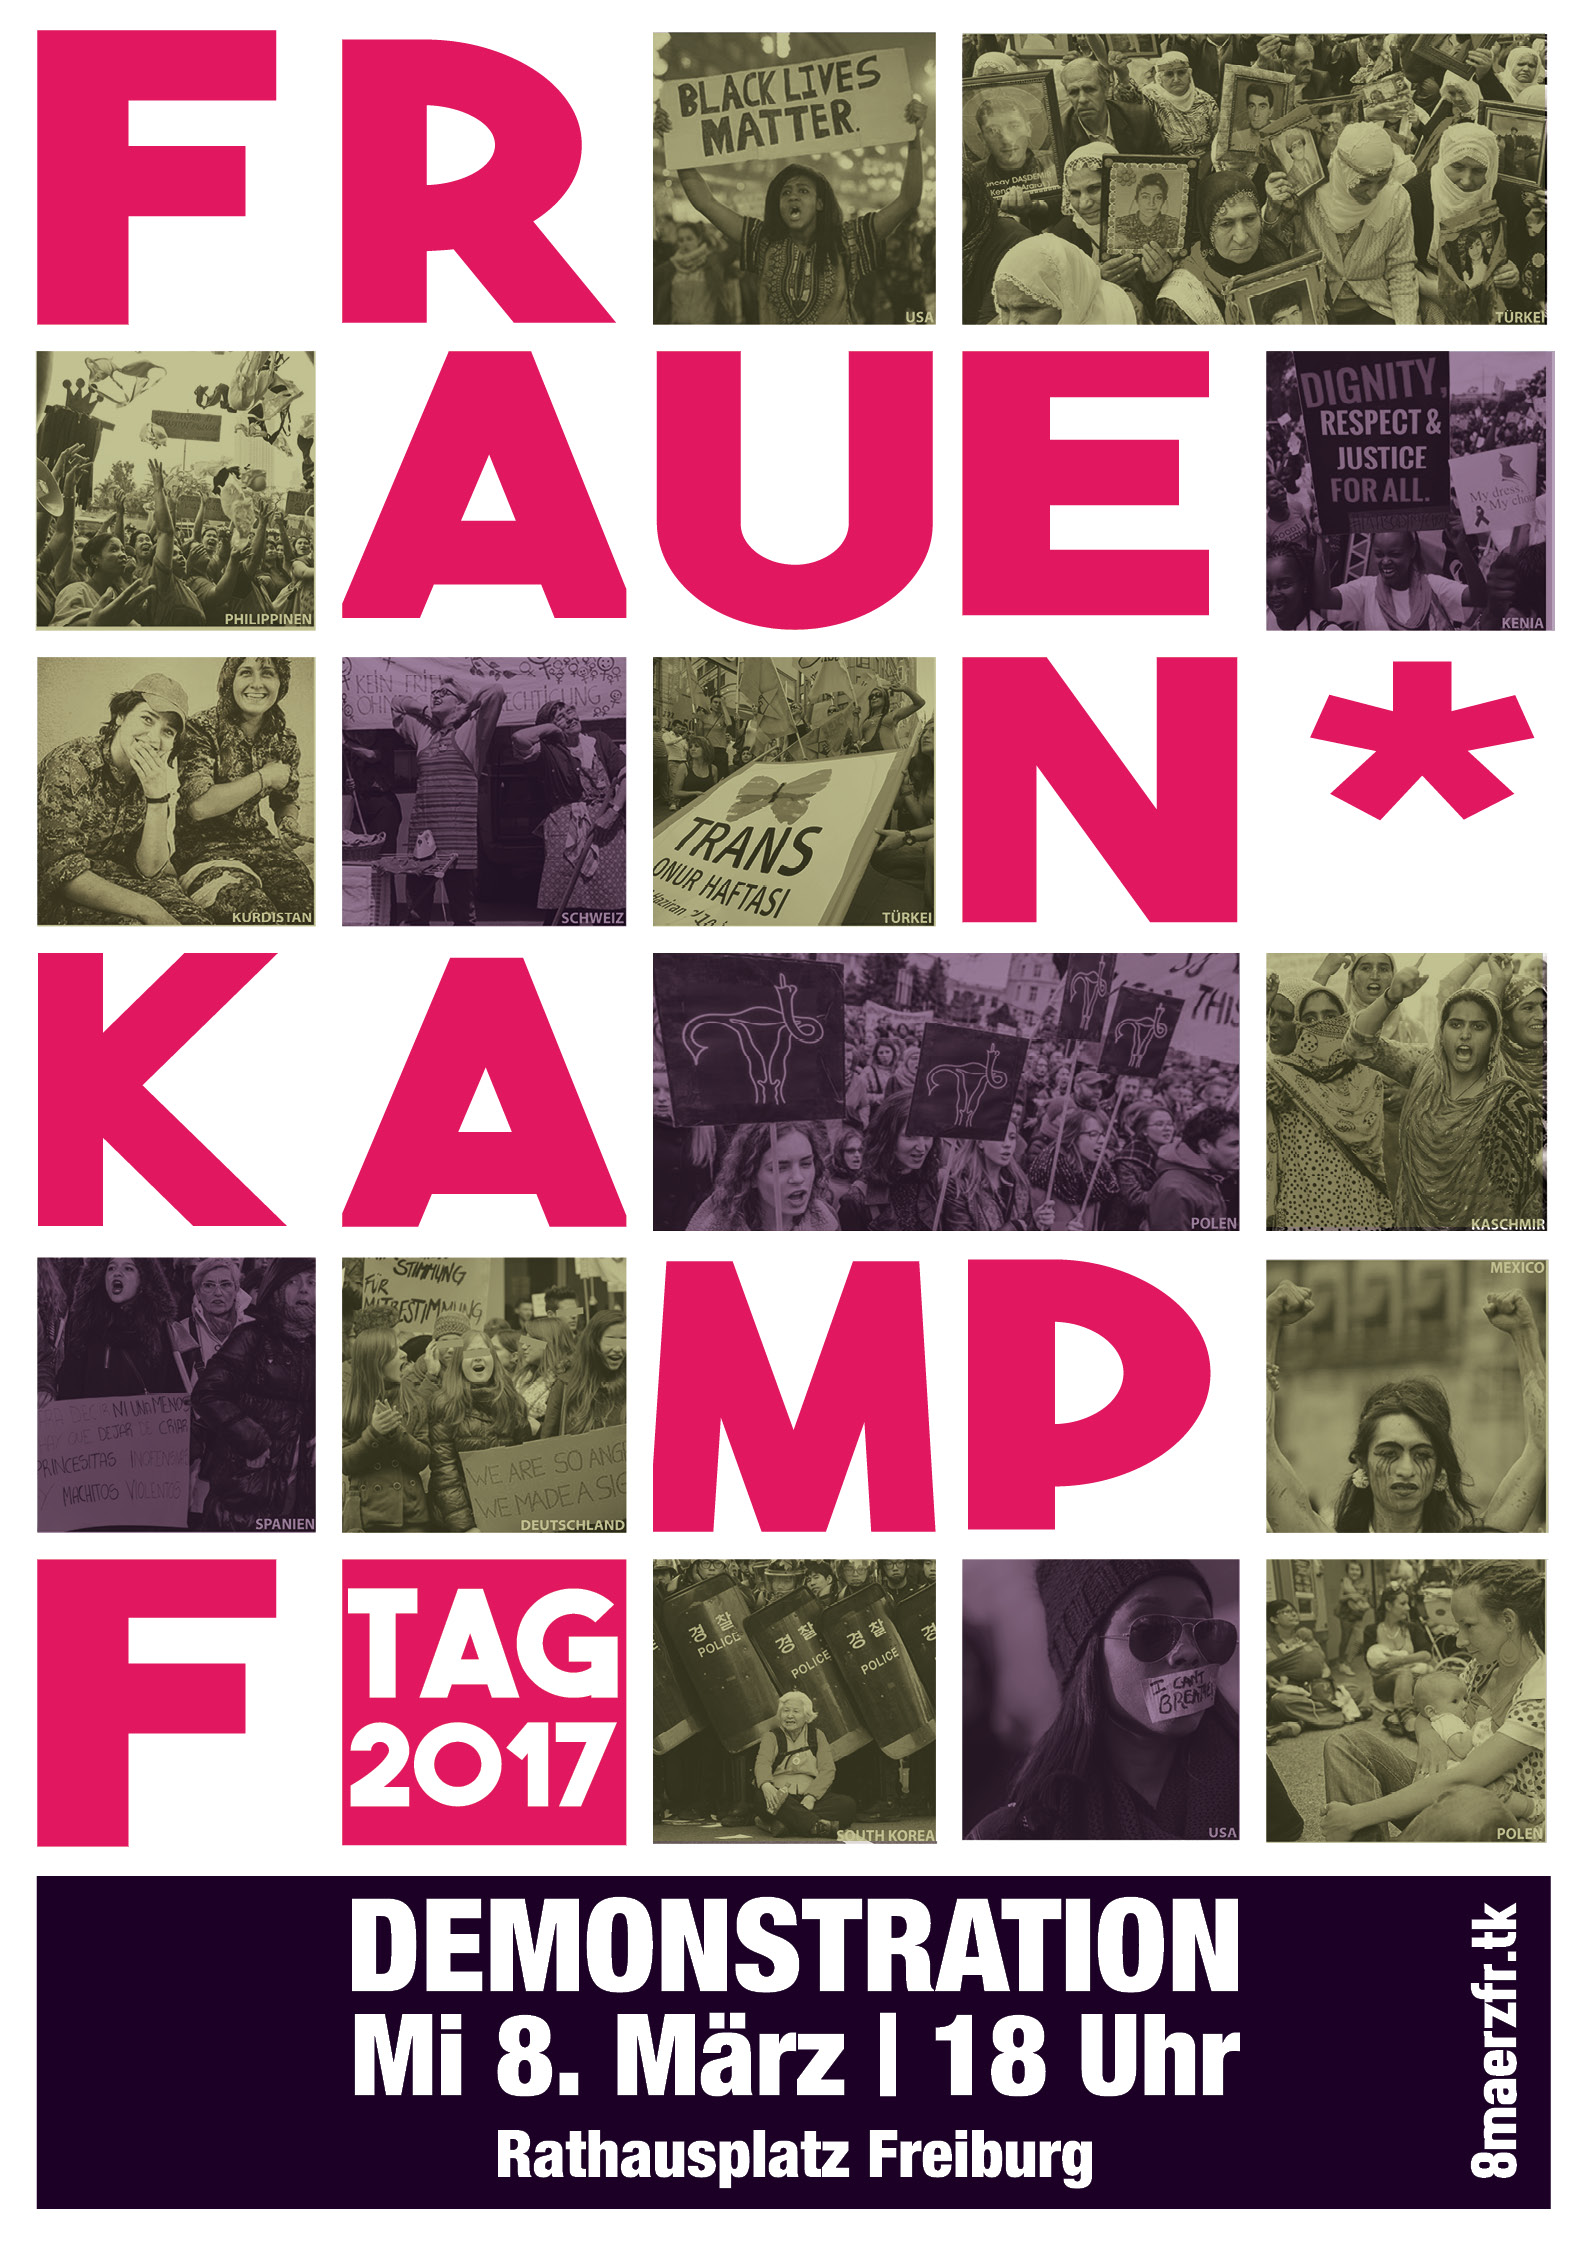 Frauen*kampftag 2017 in Freiburg